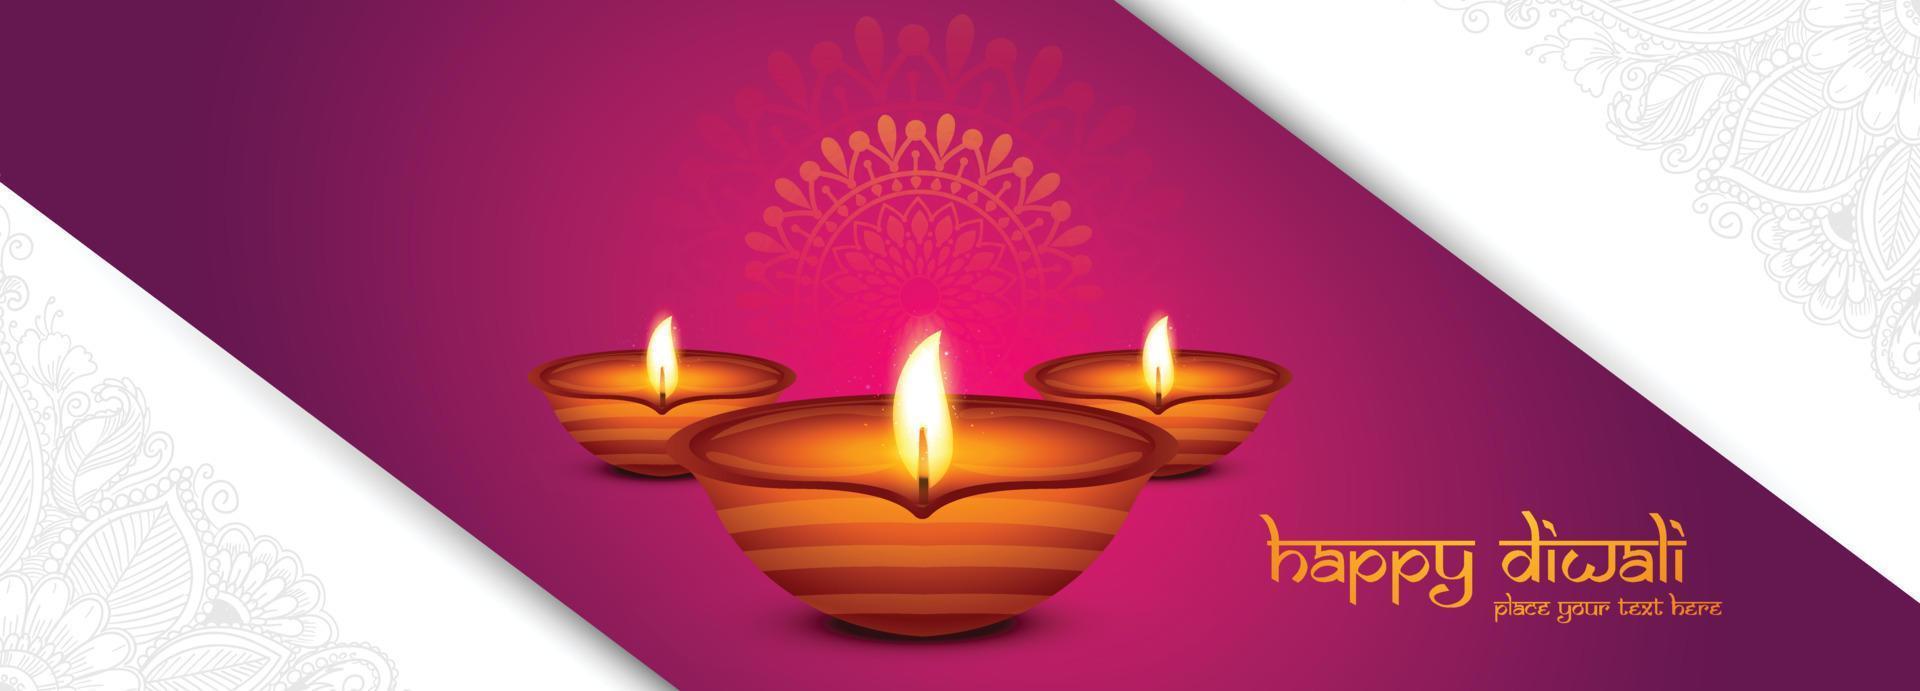 feliz diwali deseja fundo de cartão de celebração de banner vetor